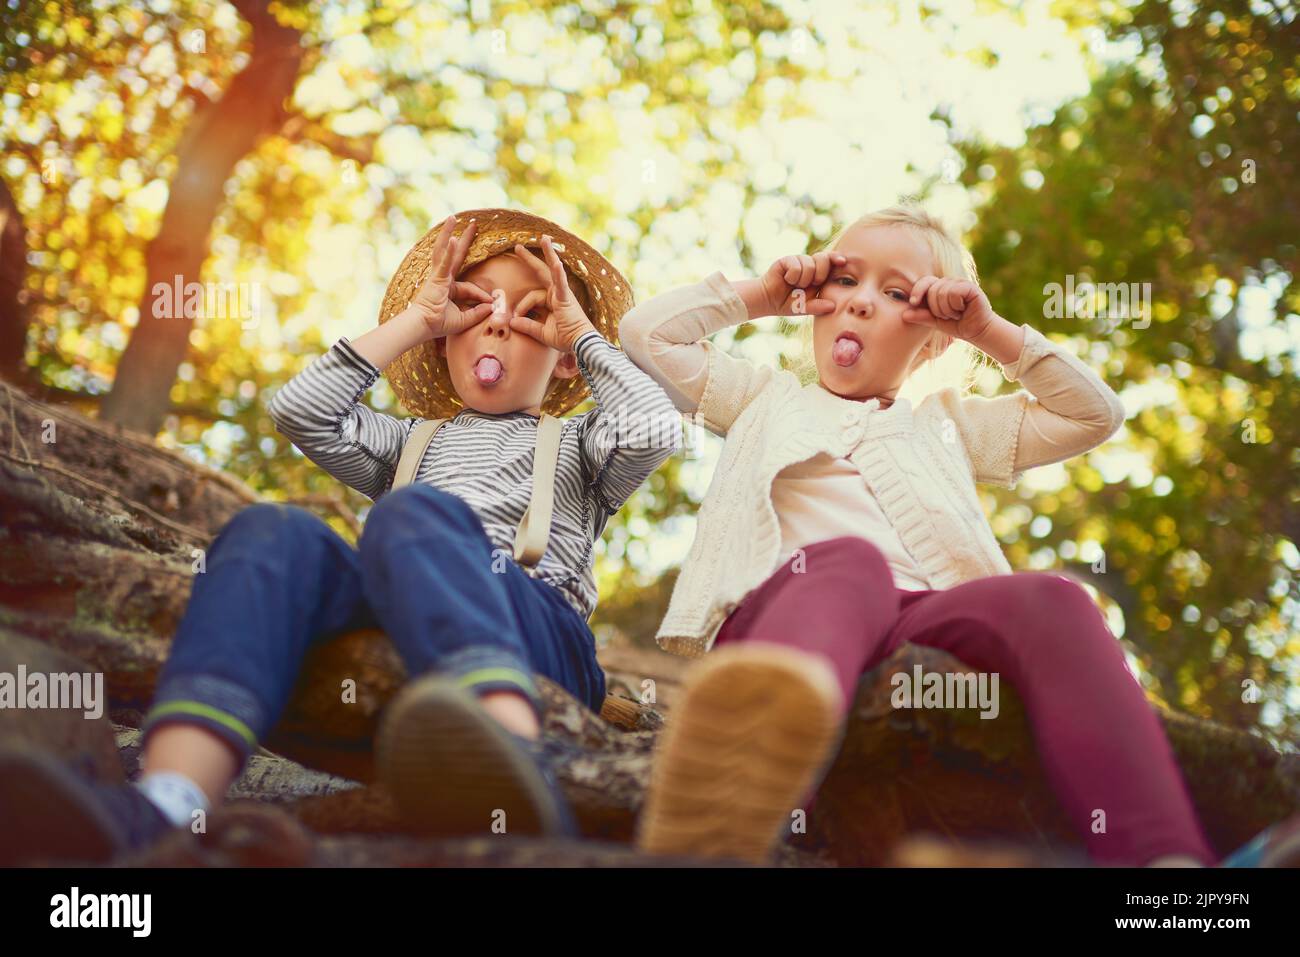 Sie sind einfach nur dumm. Portrait von zwei kleinen Kindern, die im Freien spielen. Stockfoto